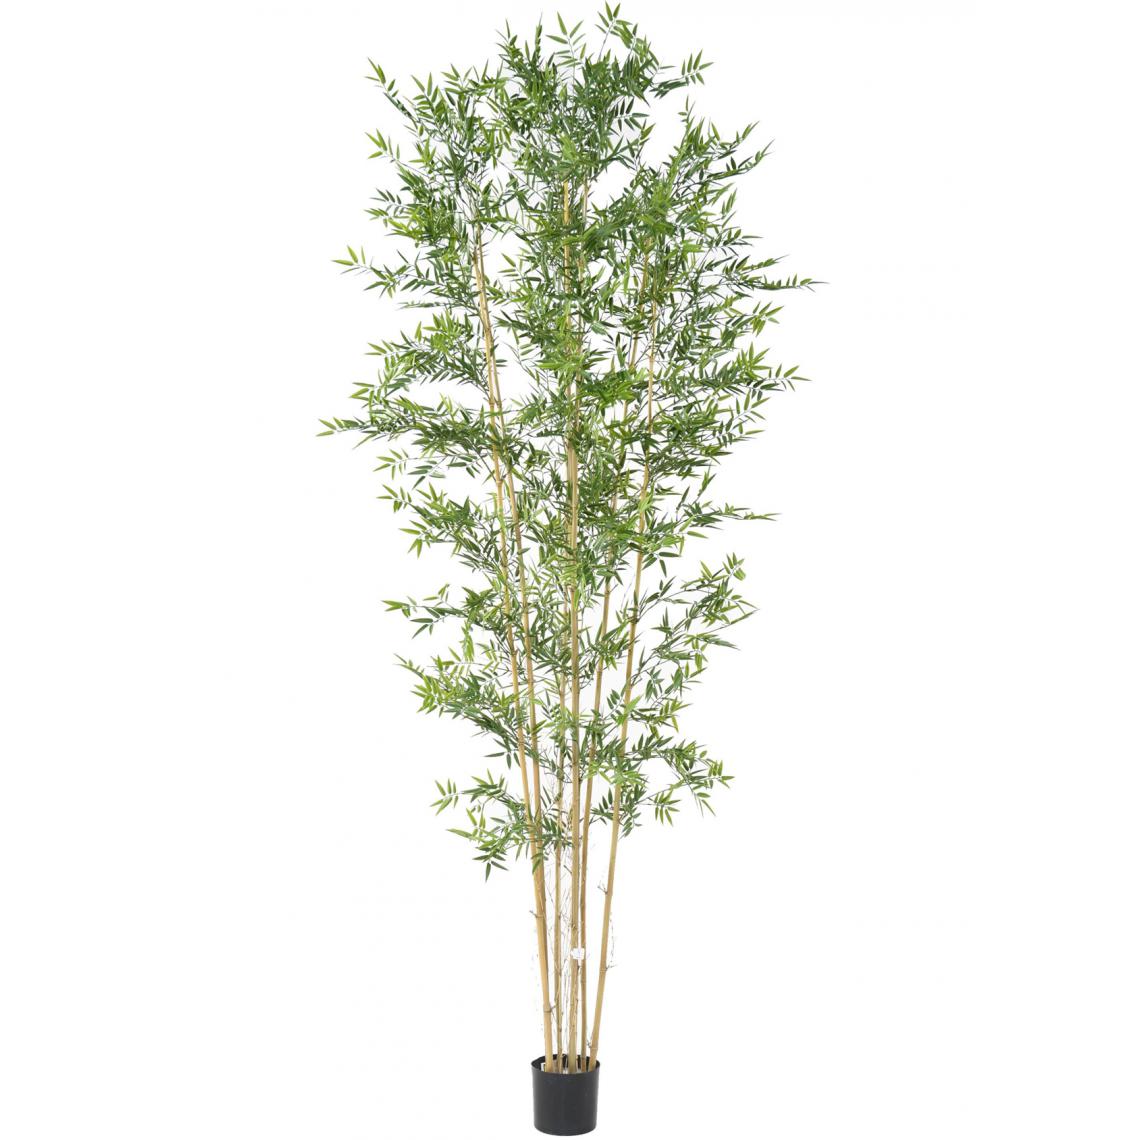 Pegane - Plante artificielle haute gamme Spécial extérieur en Bambou artificiel, couleur verte - Dim : 280 x 110 cm - Plantes et fleurs artificielles